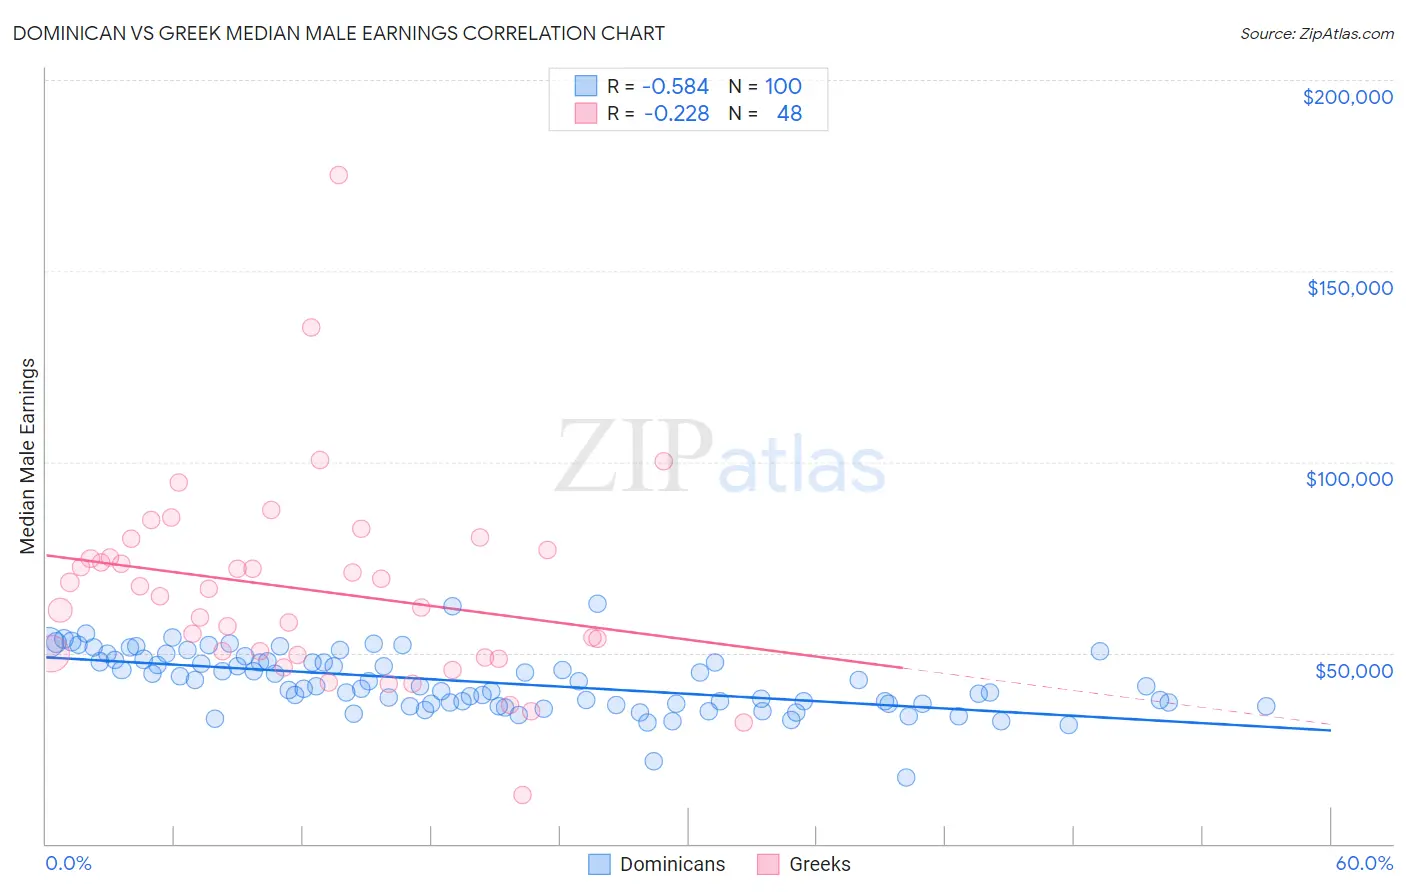 Dominican vs Greek Median Male Earnings